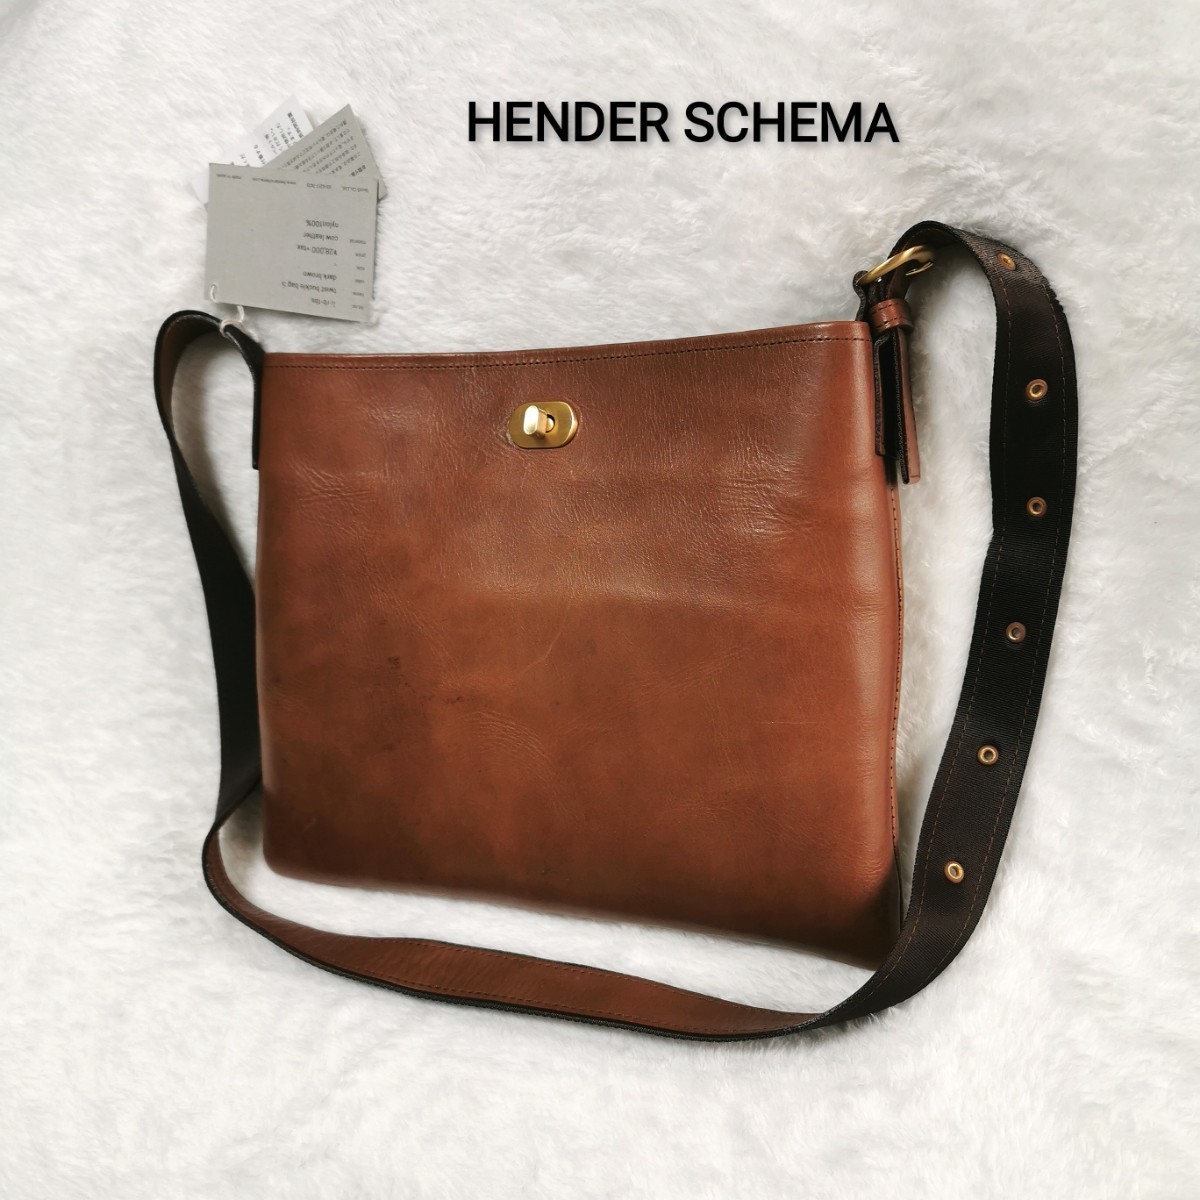 タグ付き 28000円 Hender Scheme(エンダースキーマ) 「twist buckie bag S」牛革(COW Leather) 本革レザー ターンロック ショルダーバッグ